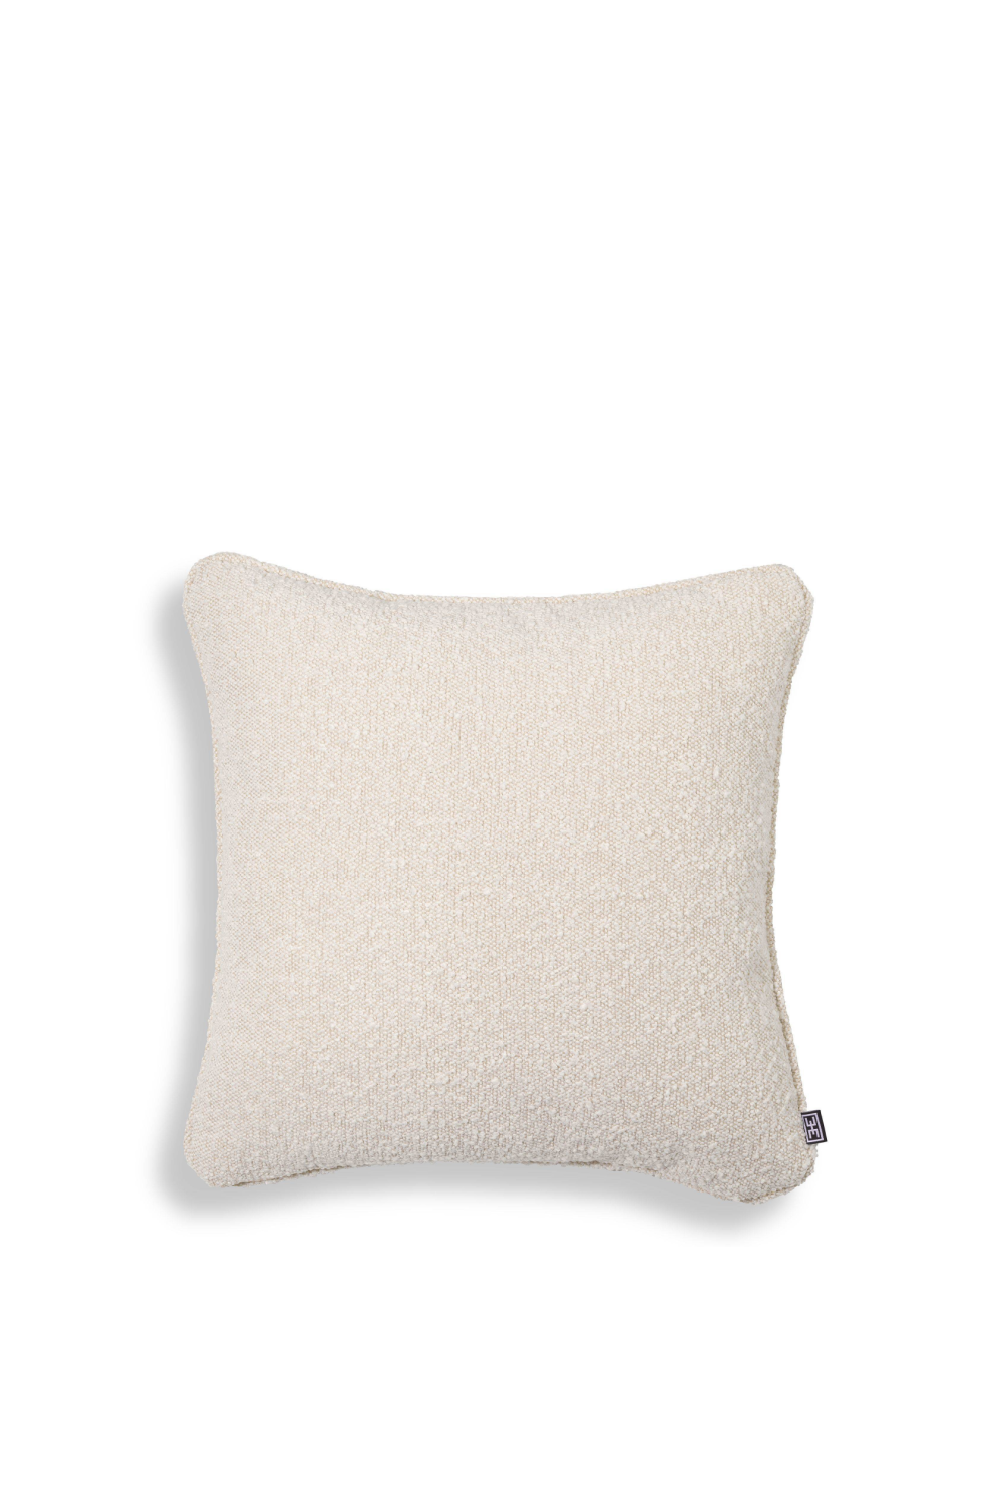 Boucle Cream Pillow - Eichholtz Palla S | OROA